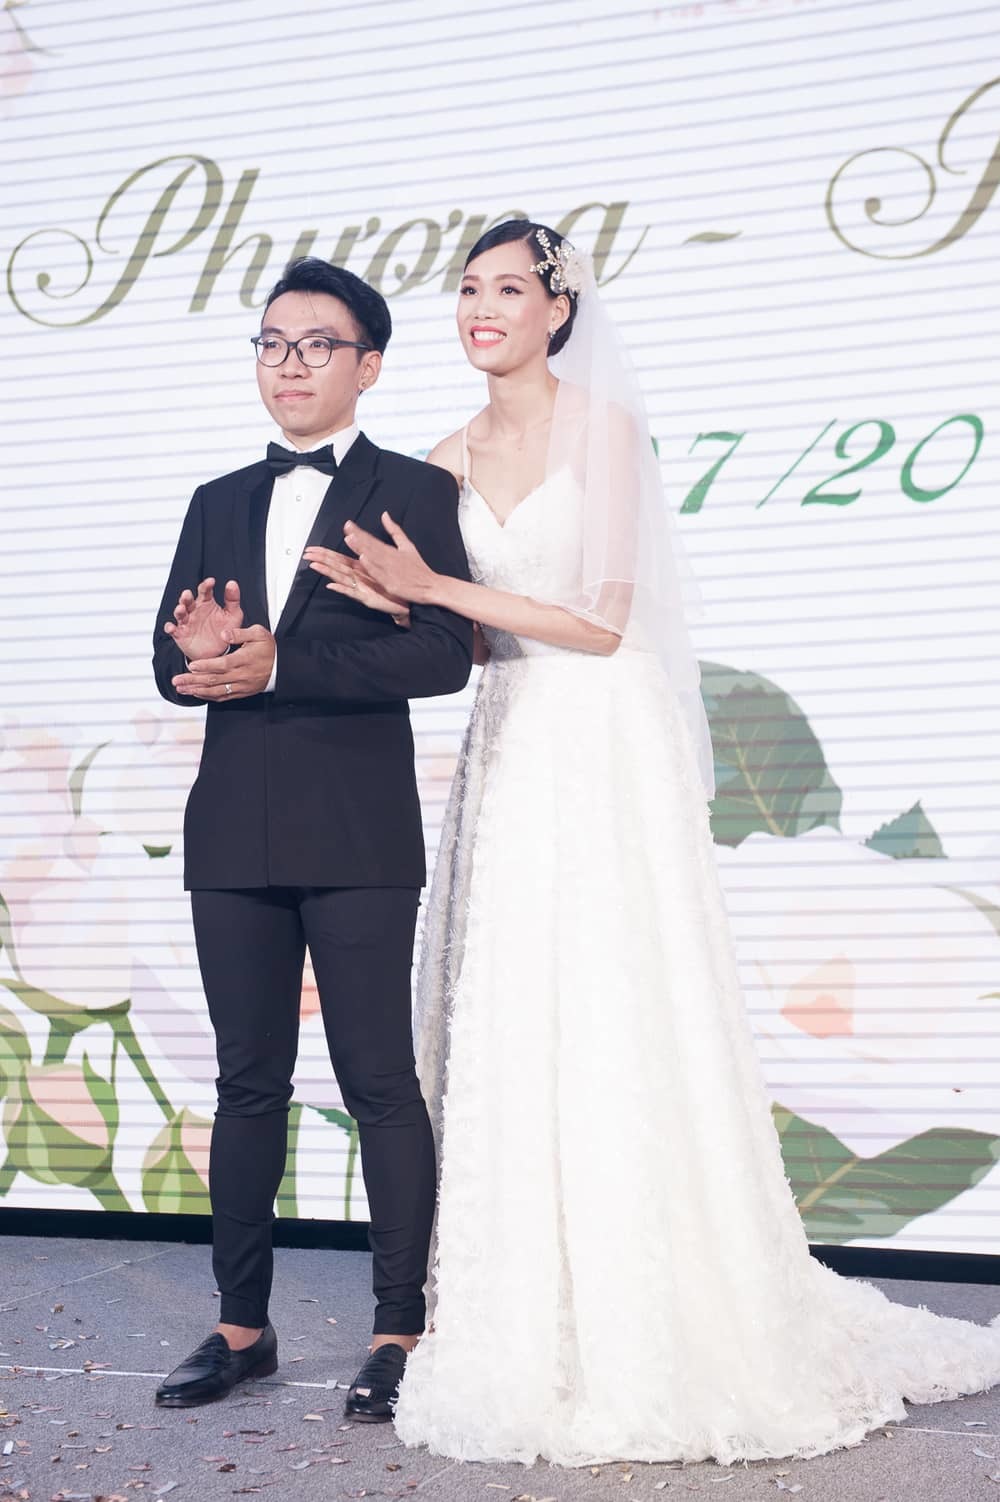  
Nguyễn Hợp và chồng trong đám cưới vào tháng 7/2018.  - Tin sao Viet - Tin tuc sao Viet - Scandal sao Viet - Tin tuc cua Sao - Tin cua Sao